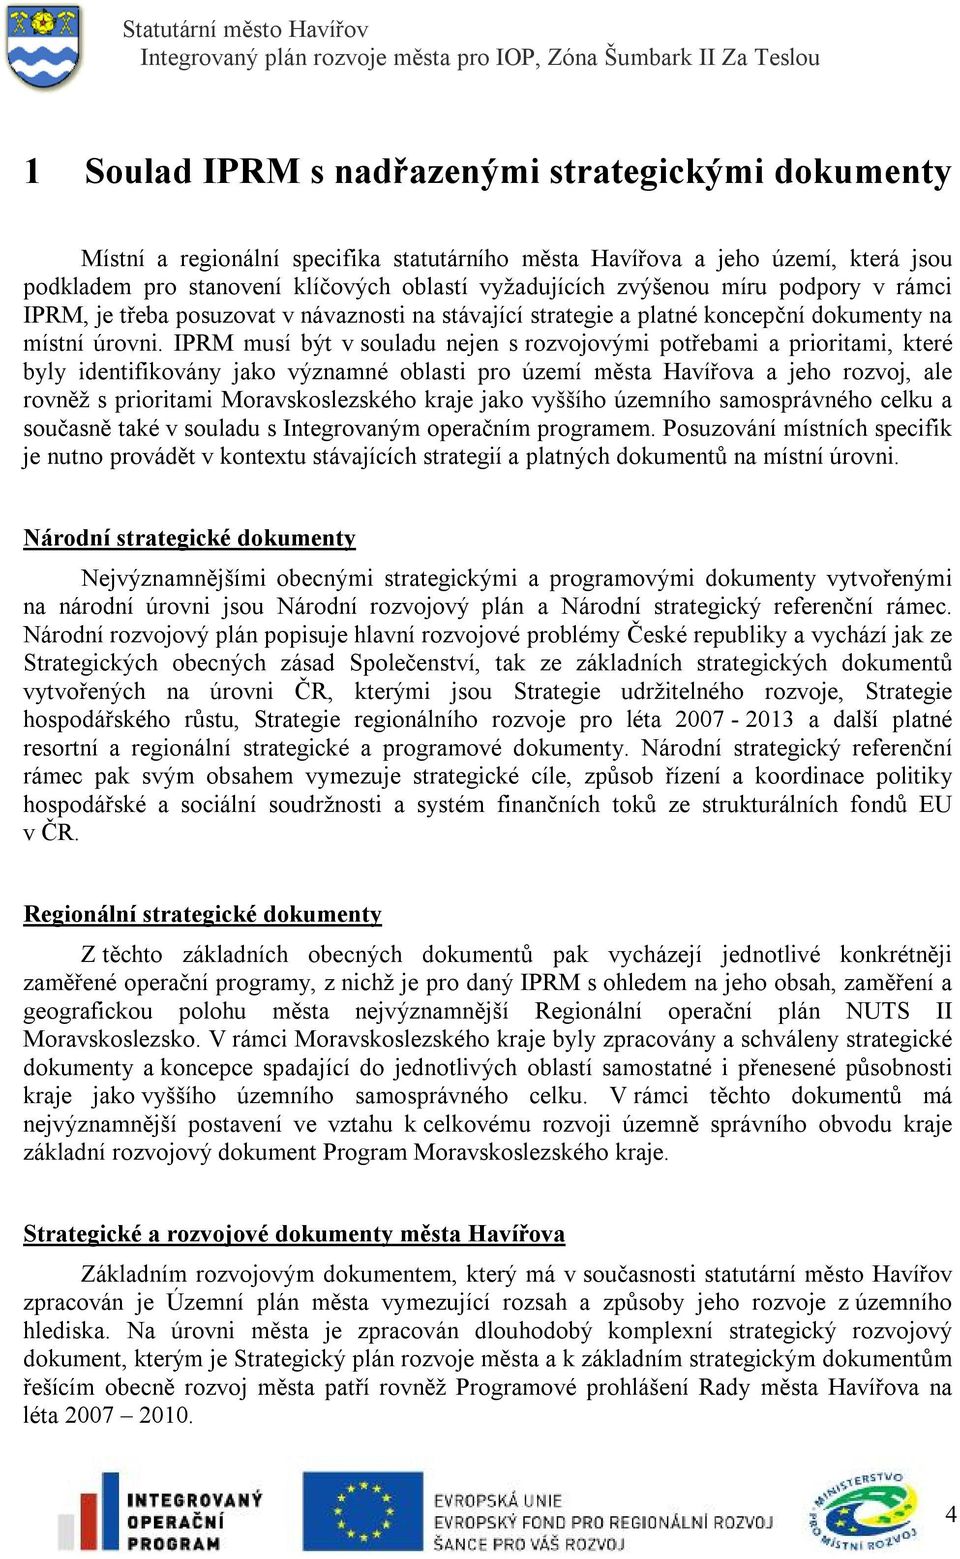 IPRM musí být v souladu nejen s rozvojovými potřebami a prioritami, které byly identifikovány jako významné oblasti pro území města Havířova a jeho rozvoj, ale rovněž s prioritami Moravskoslezského